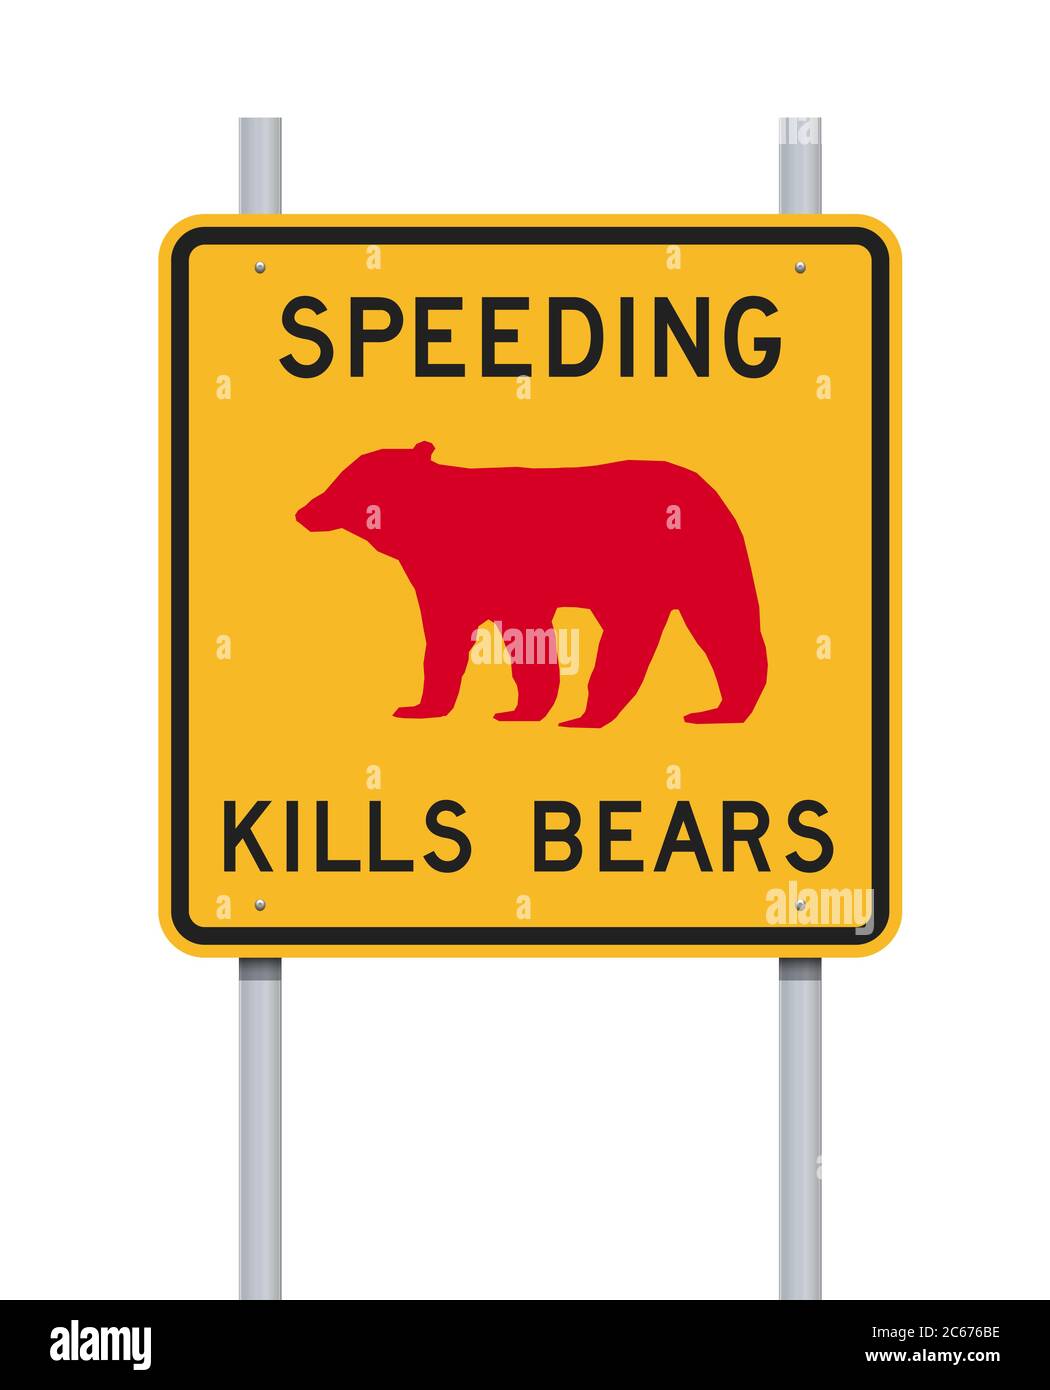 L'illustrazione vettoriale delle uccisioni in accelerazione reca un cartello stradale su montanti metallici Illustrazione Vettoriale